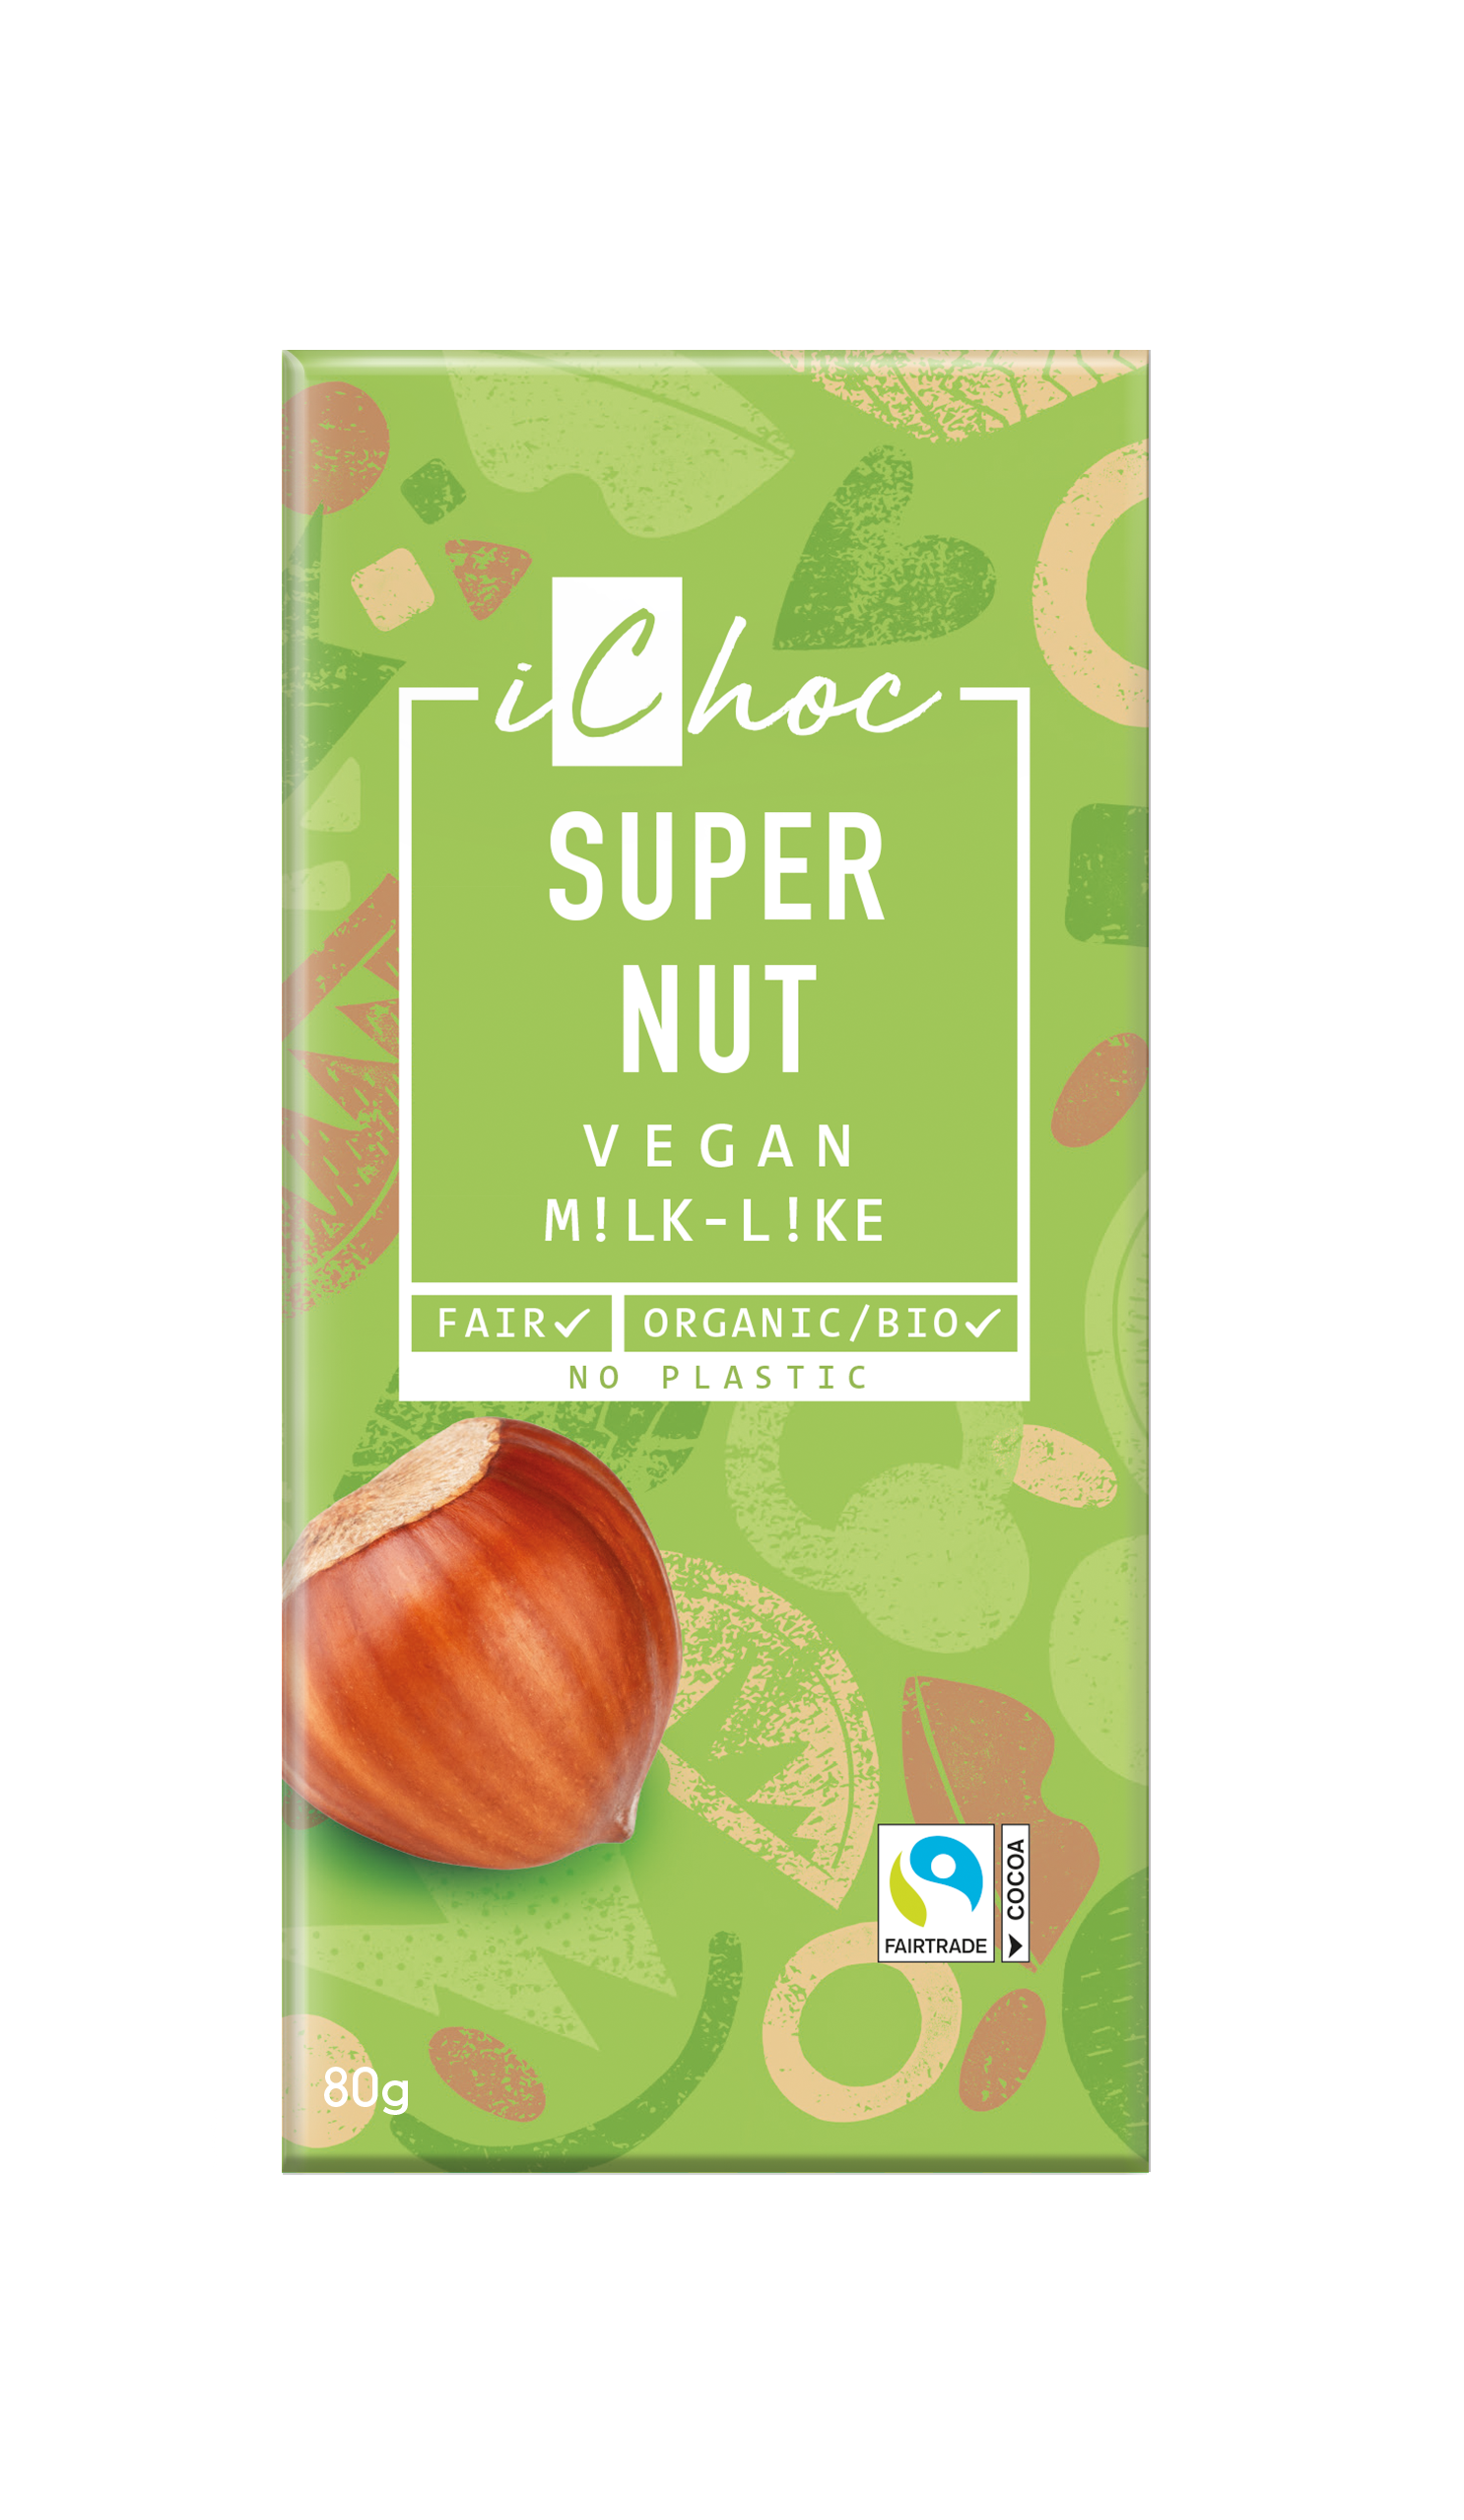 iChoc Super Nut Vegan 80g